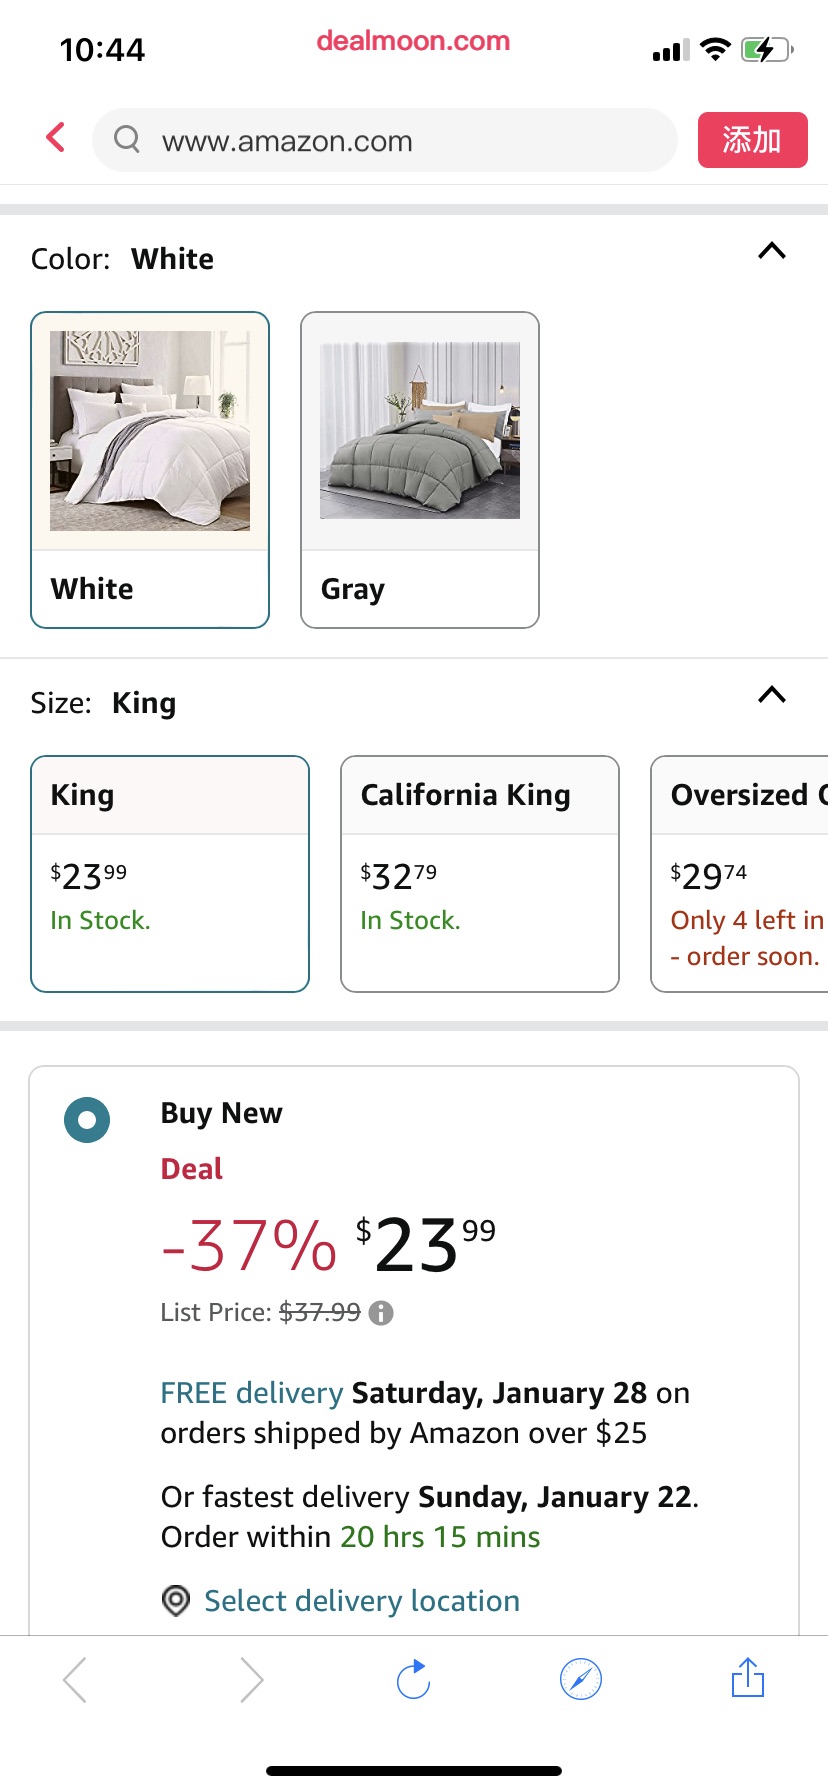 Amazon.com: Kingsley trend King Comforter Duvet Insert - Down Alternative White Comforter King羽绒替代被